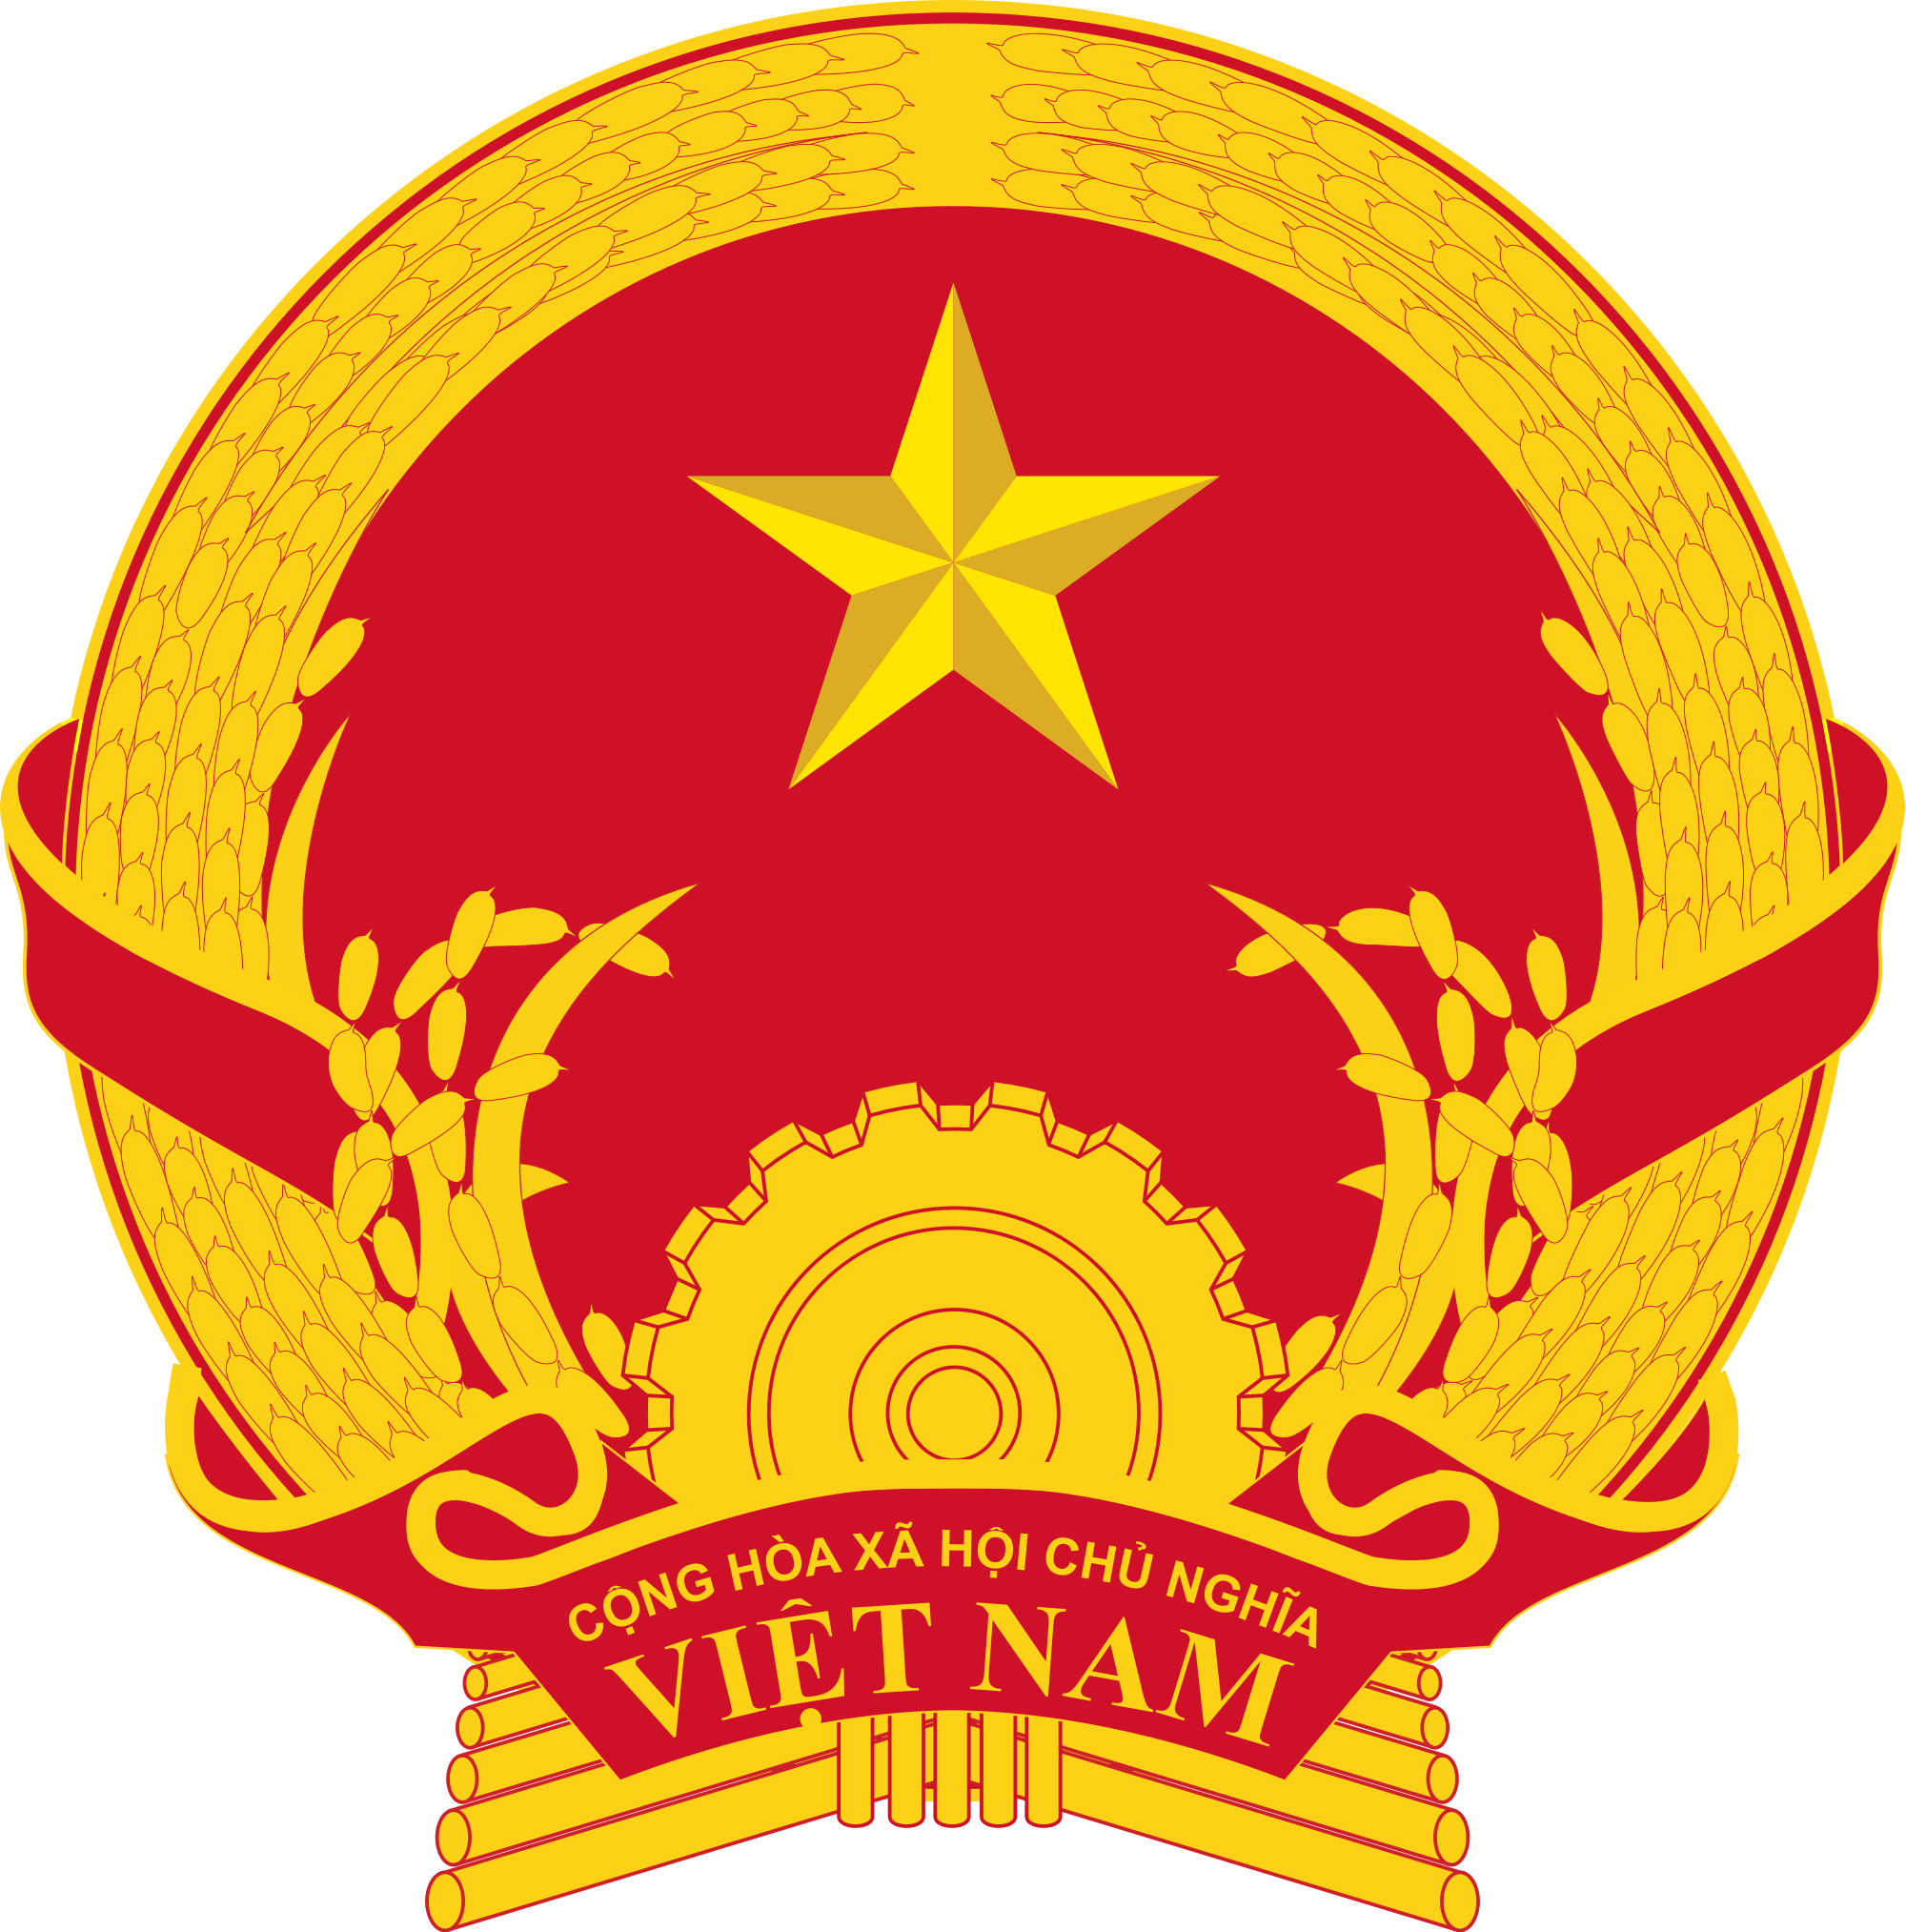 Godło Wietnamu. Fot. Wikipedia